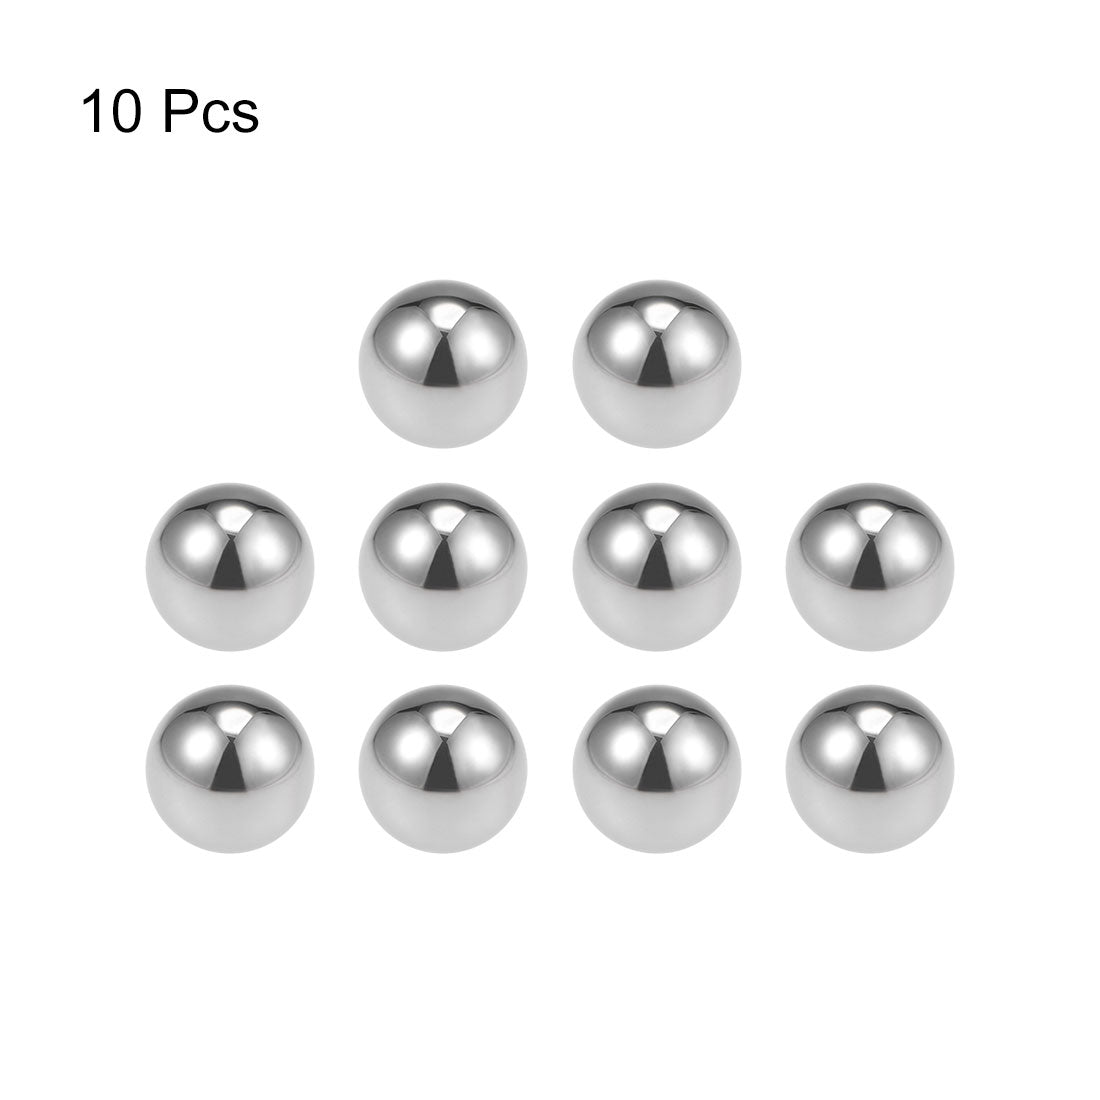 Uxcell Uxcell 1/4" Bearing Balls Tungsten Carbide G25 Precision Balls 10pcs